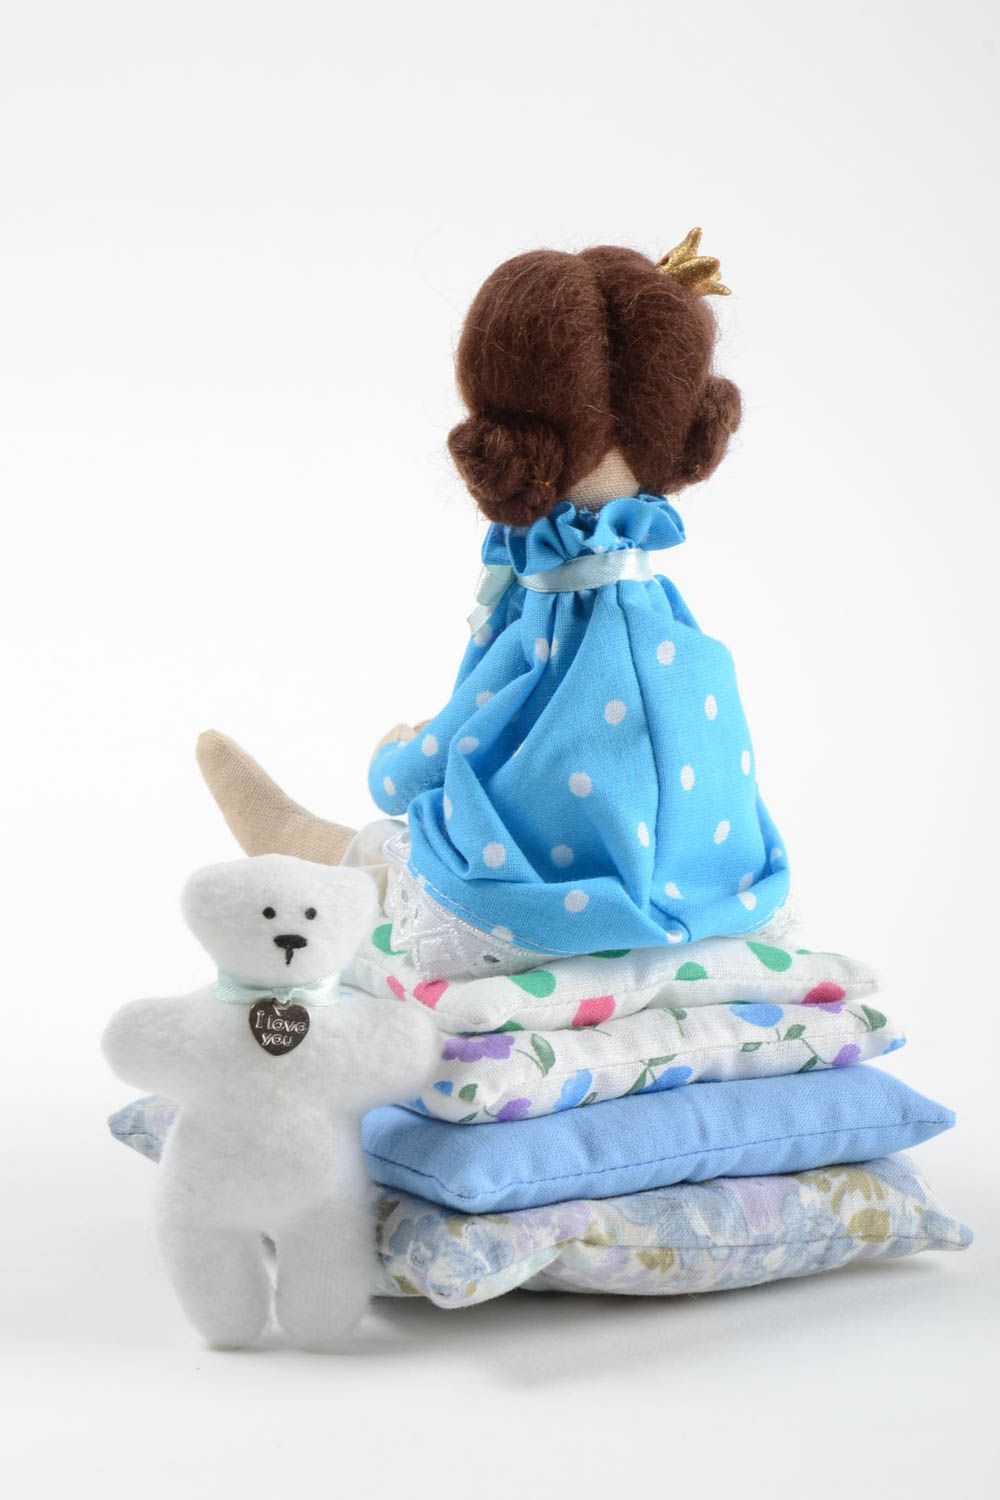 Интерьерная игрушка из хлопка мягкая авторская ручной работы Принцесса с мишкой фото 4